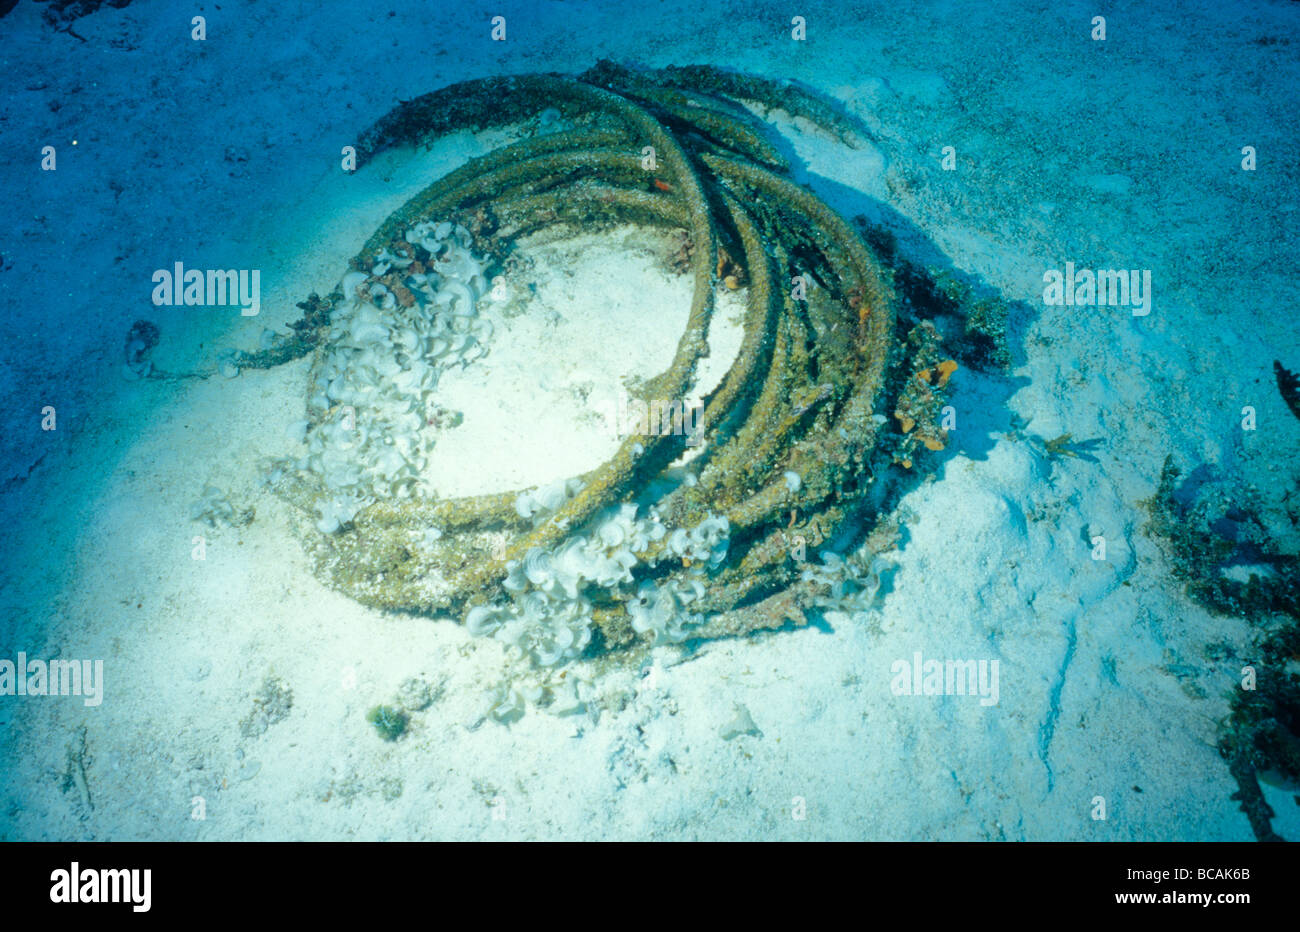 Eine Rolle von ausrangierten Metallseil rosten auf dem Meeresboden. Stockfoto